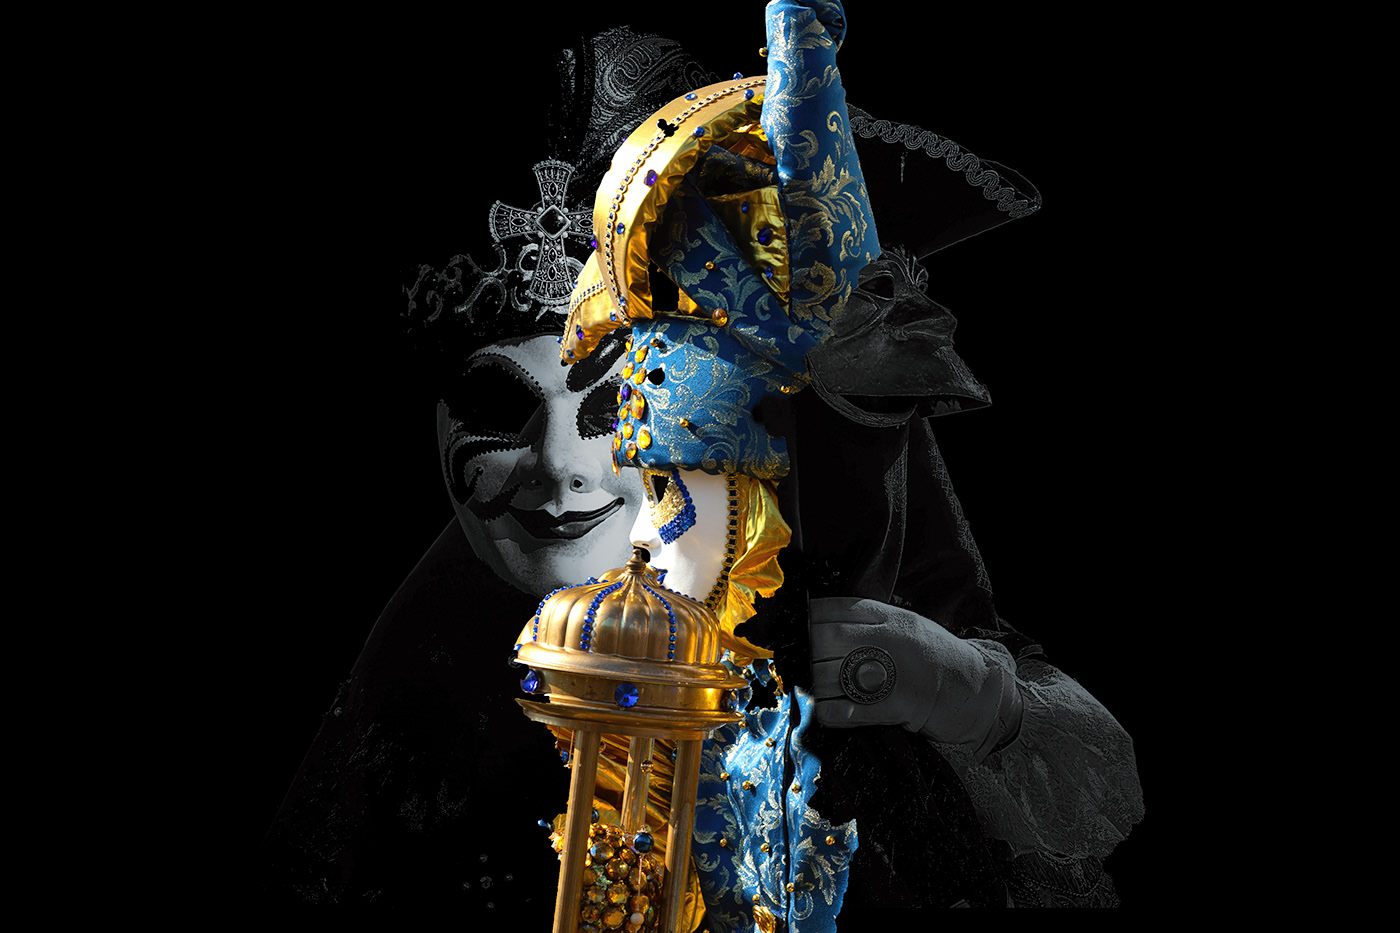 jester masks photographers Photography  Pierrot politics Renaissance Shane Aurousseau travel photographers Venice